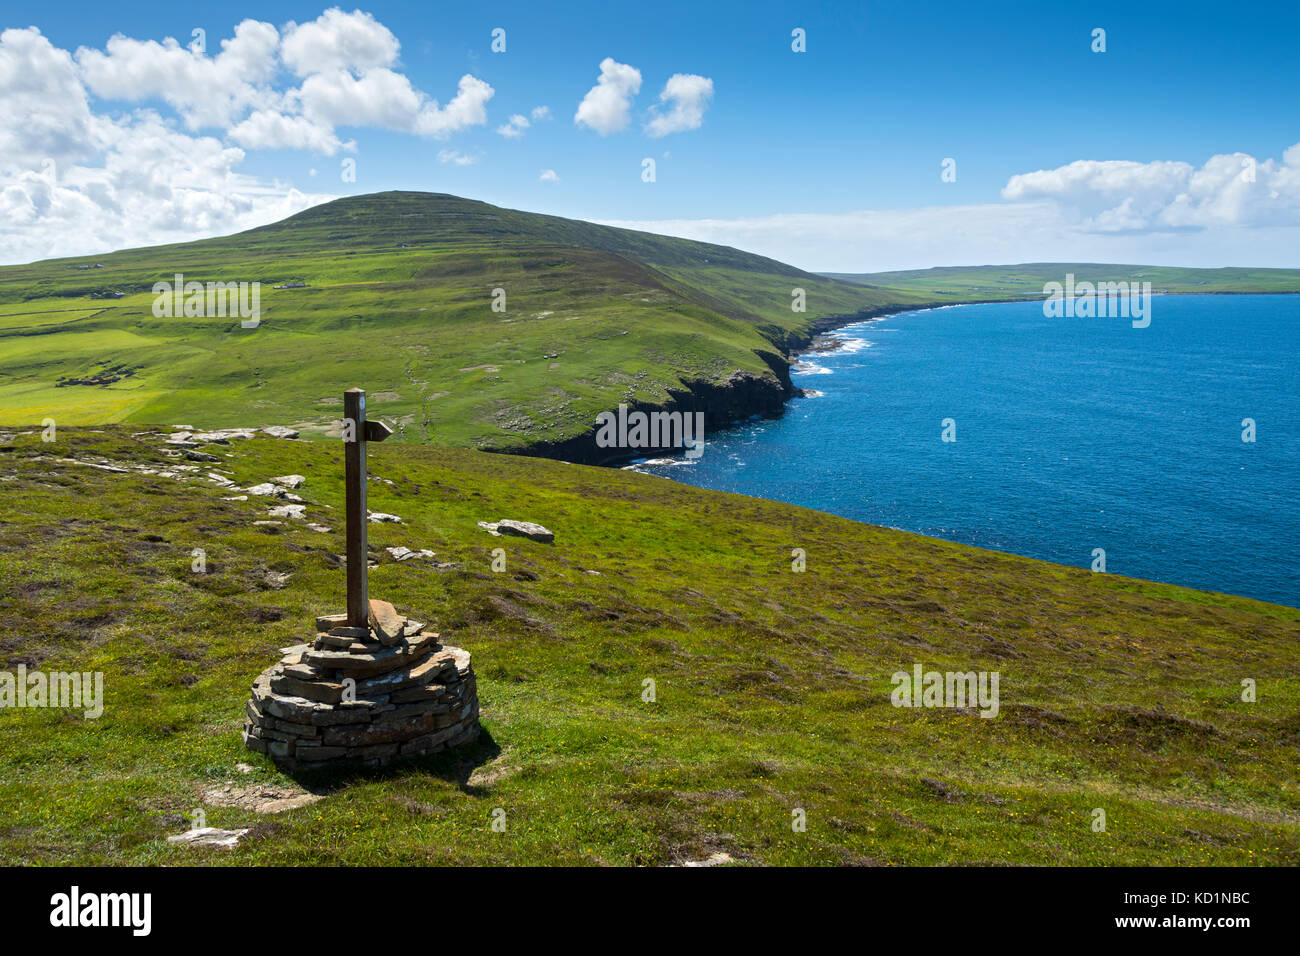 Kierfea Hill and Saviskaill Bay from Faraclett Head, Rousay, Orkney Islands, Scotland, UK. Stock Photo